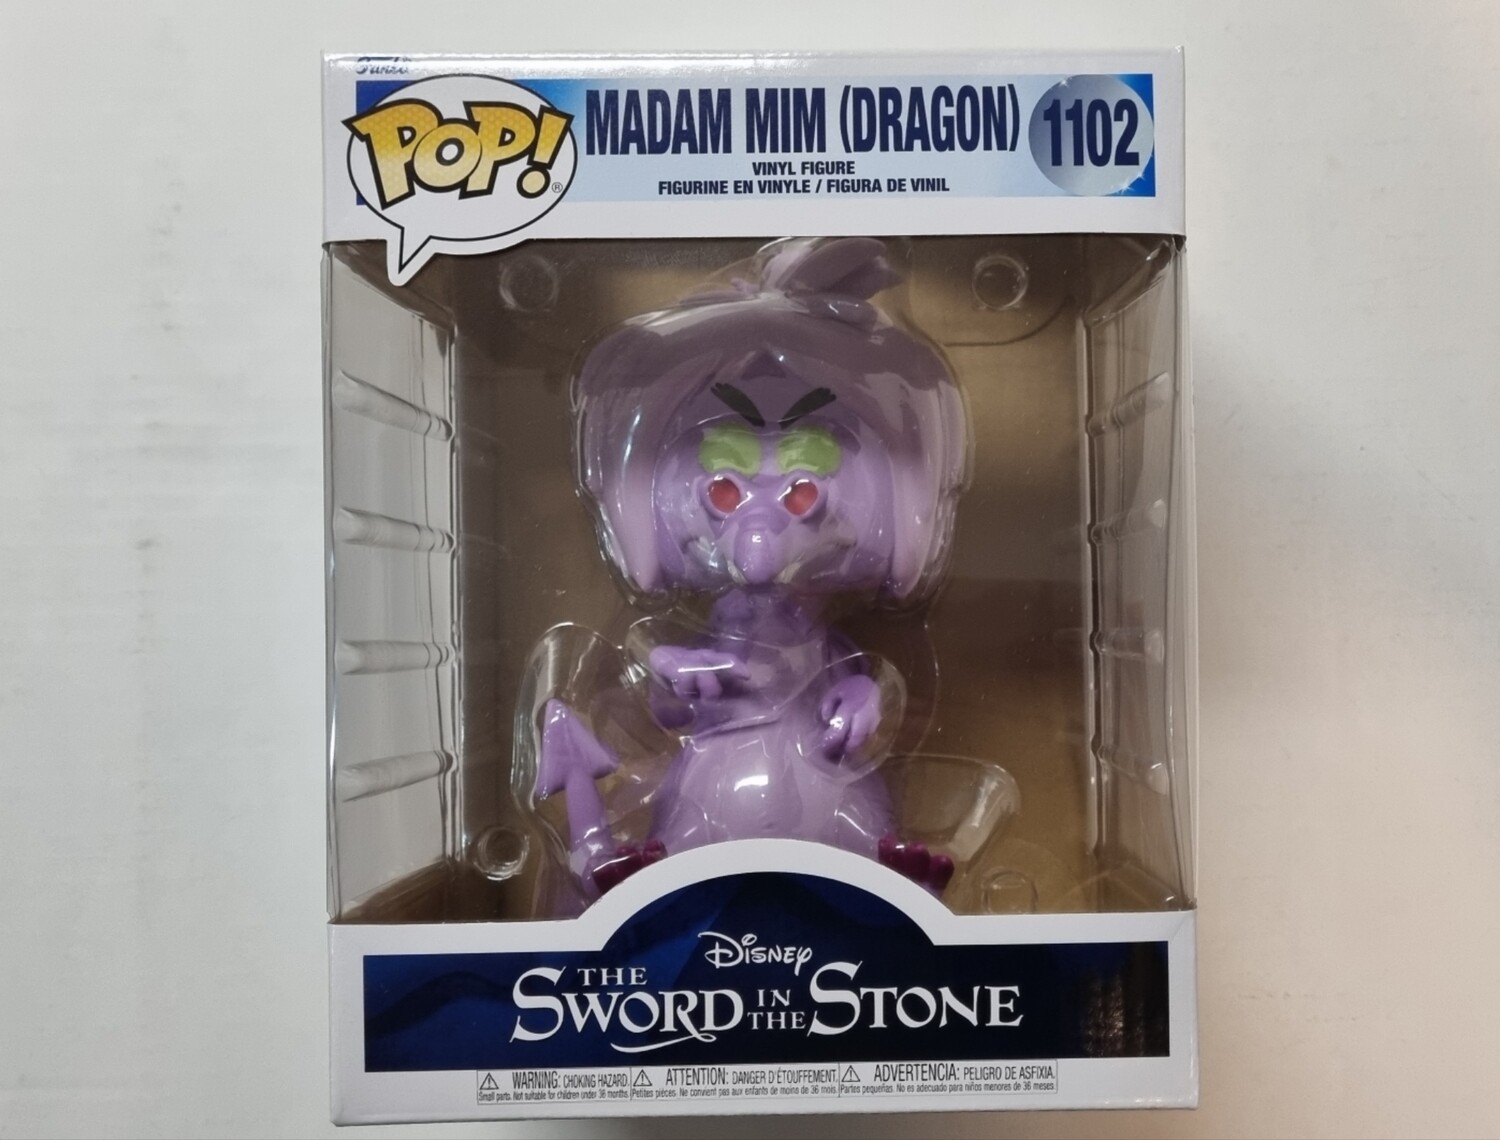 Funko Pop! #1102 Madam Mim (Dragon), The Sword in the Stone